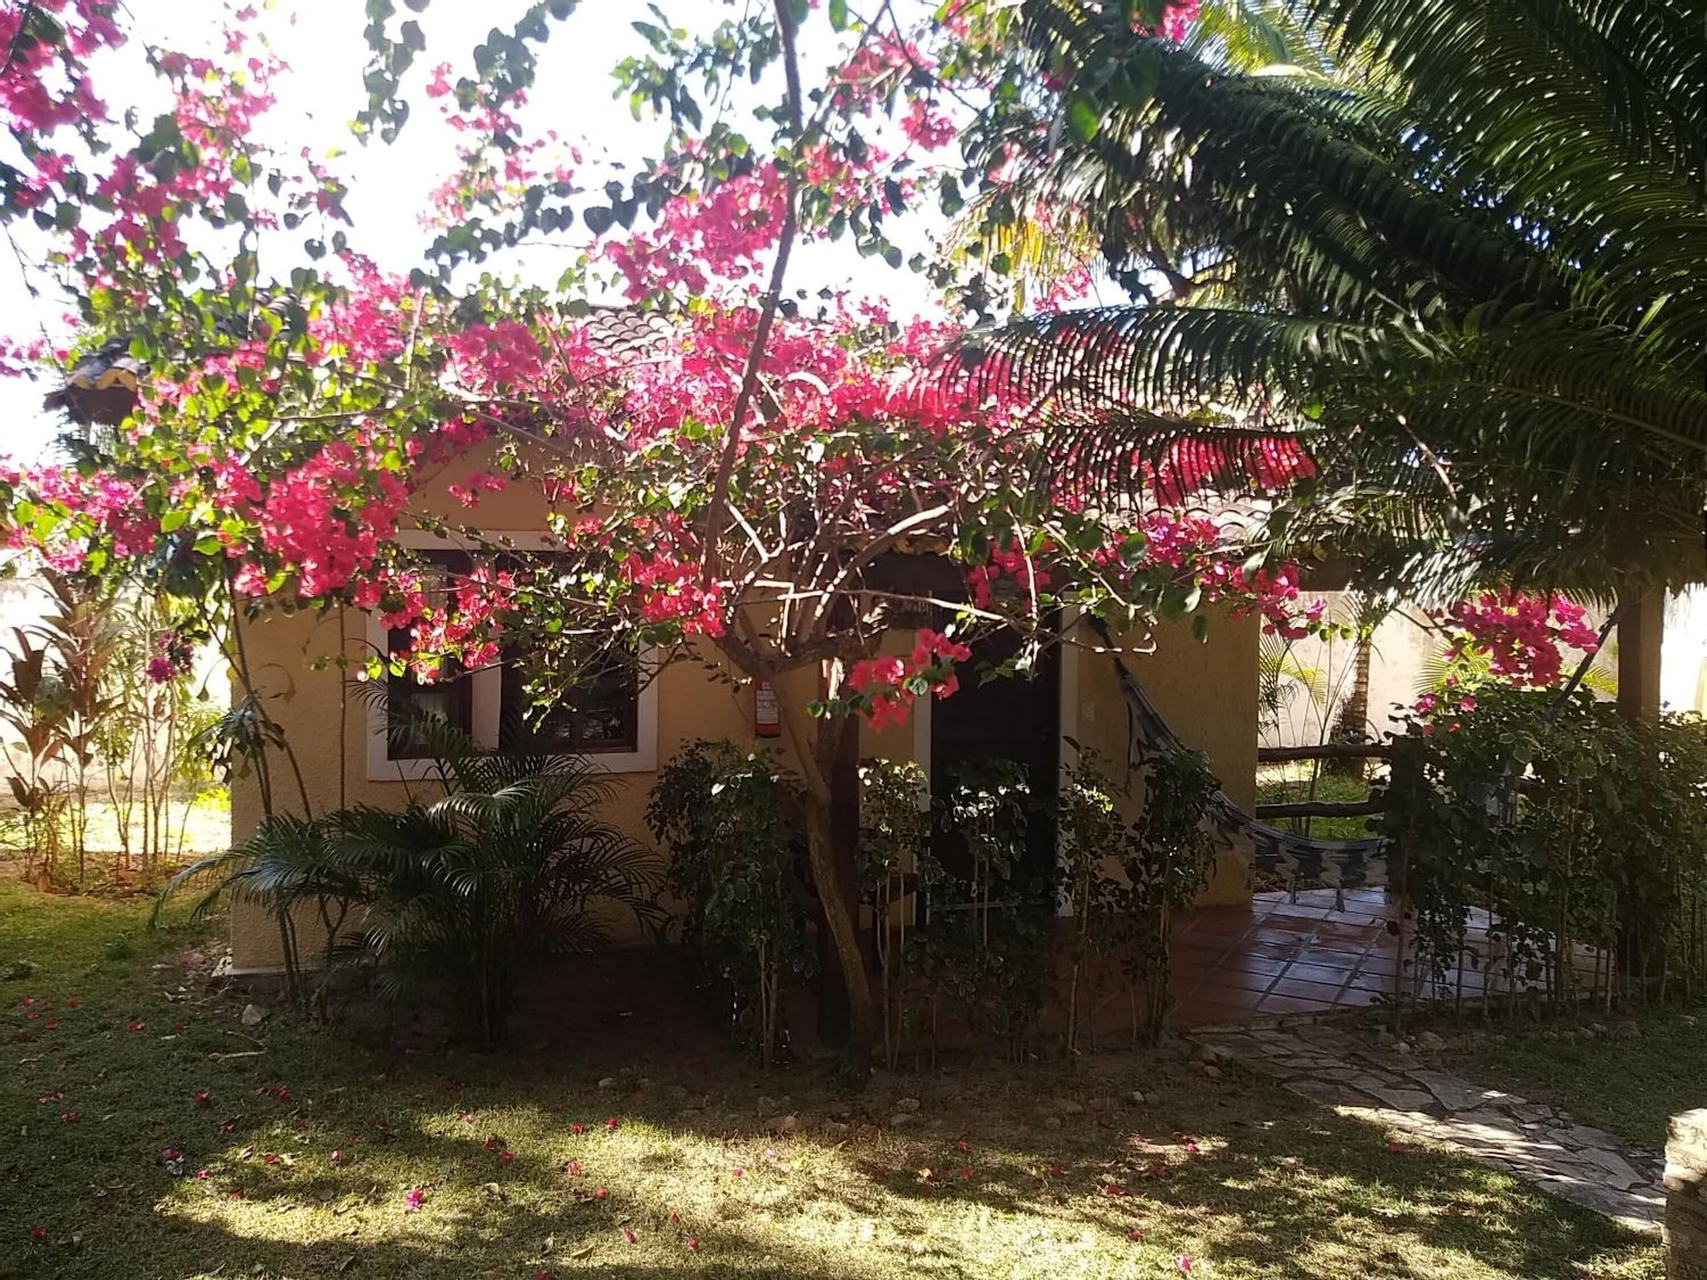 Exterior & Views 2, Aquarela do Brasil Village, Tibau do Sul